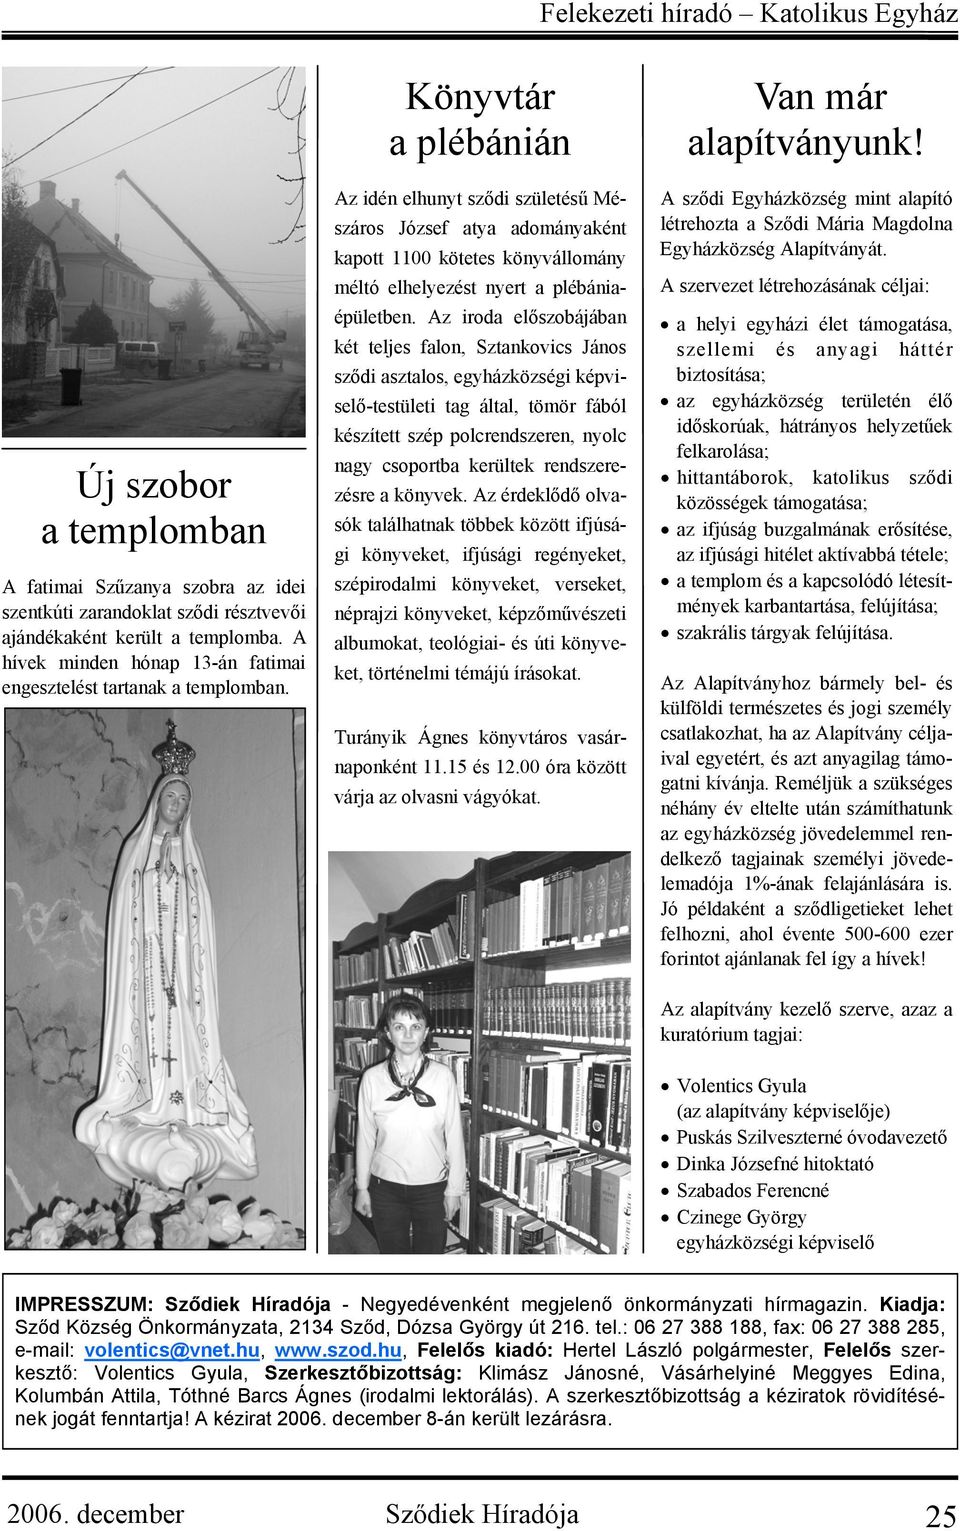 Könyvtár a plébánián Az idén elhunyt sződi születésű Mészáros József atya adományaként kapott 1100 kötetes könyvállomány méltó elhelyezést nyert a plébániaépületben.